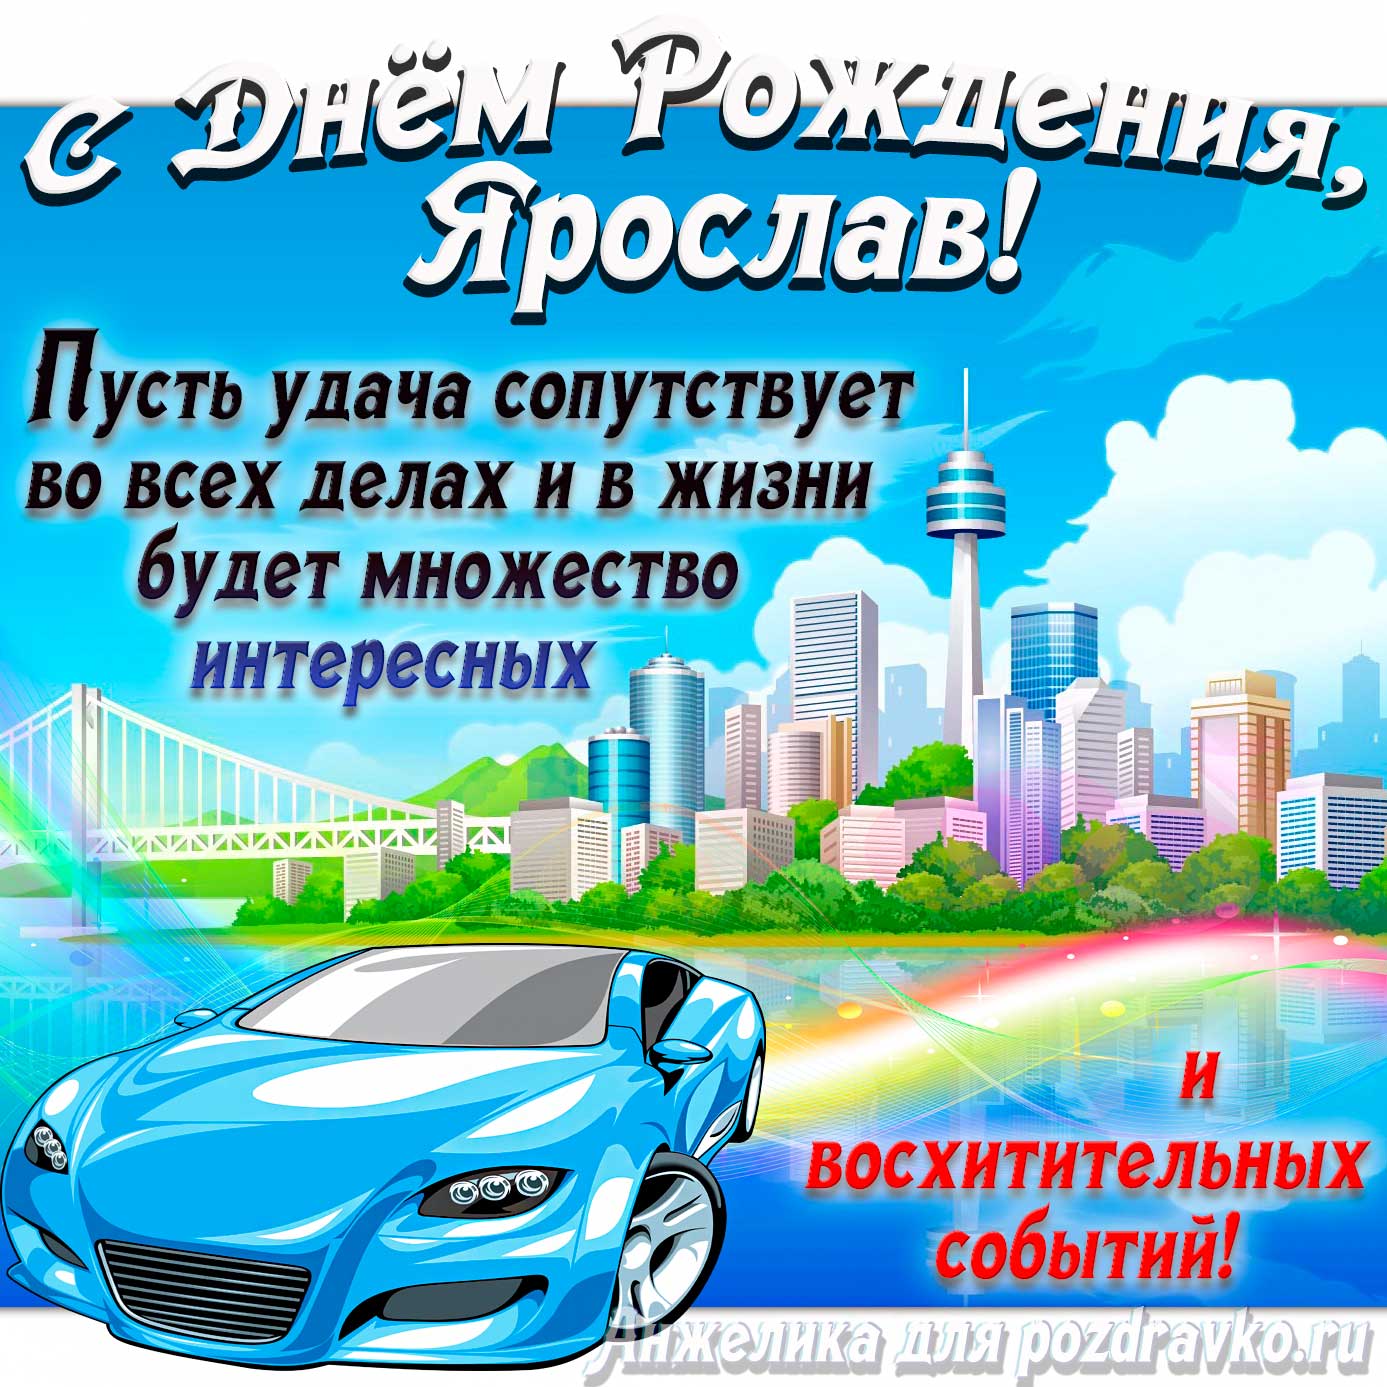 Открытка - с Днём Рождения Ярослав с голубой машиной и пожеланием. Скачать бесплатно или отправить картинку.